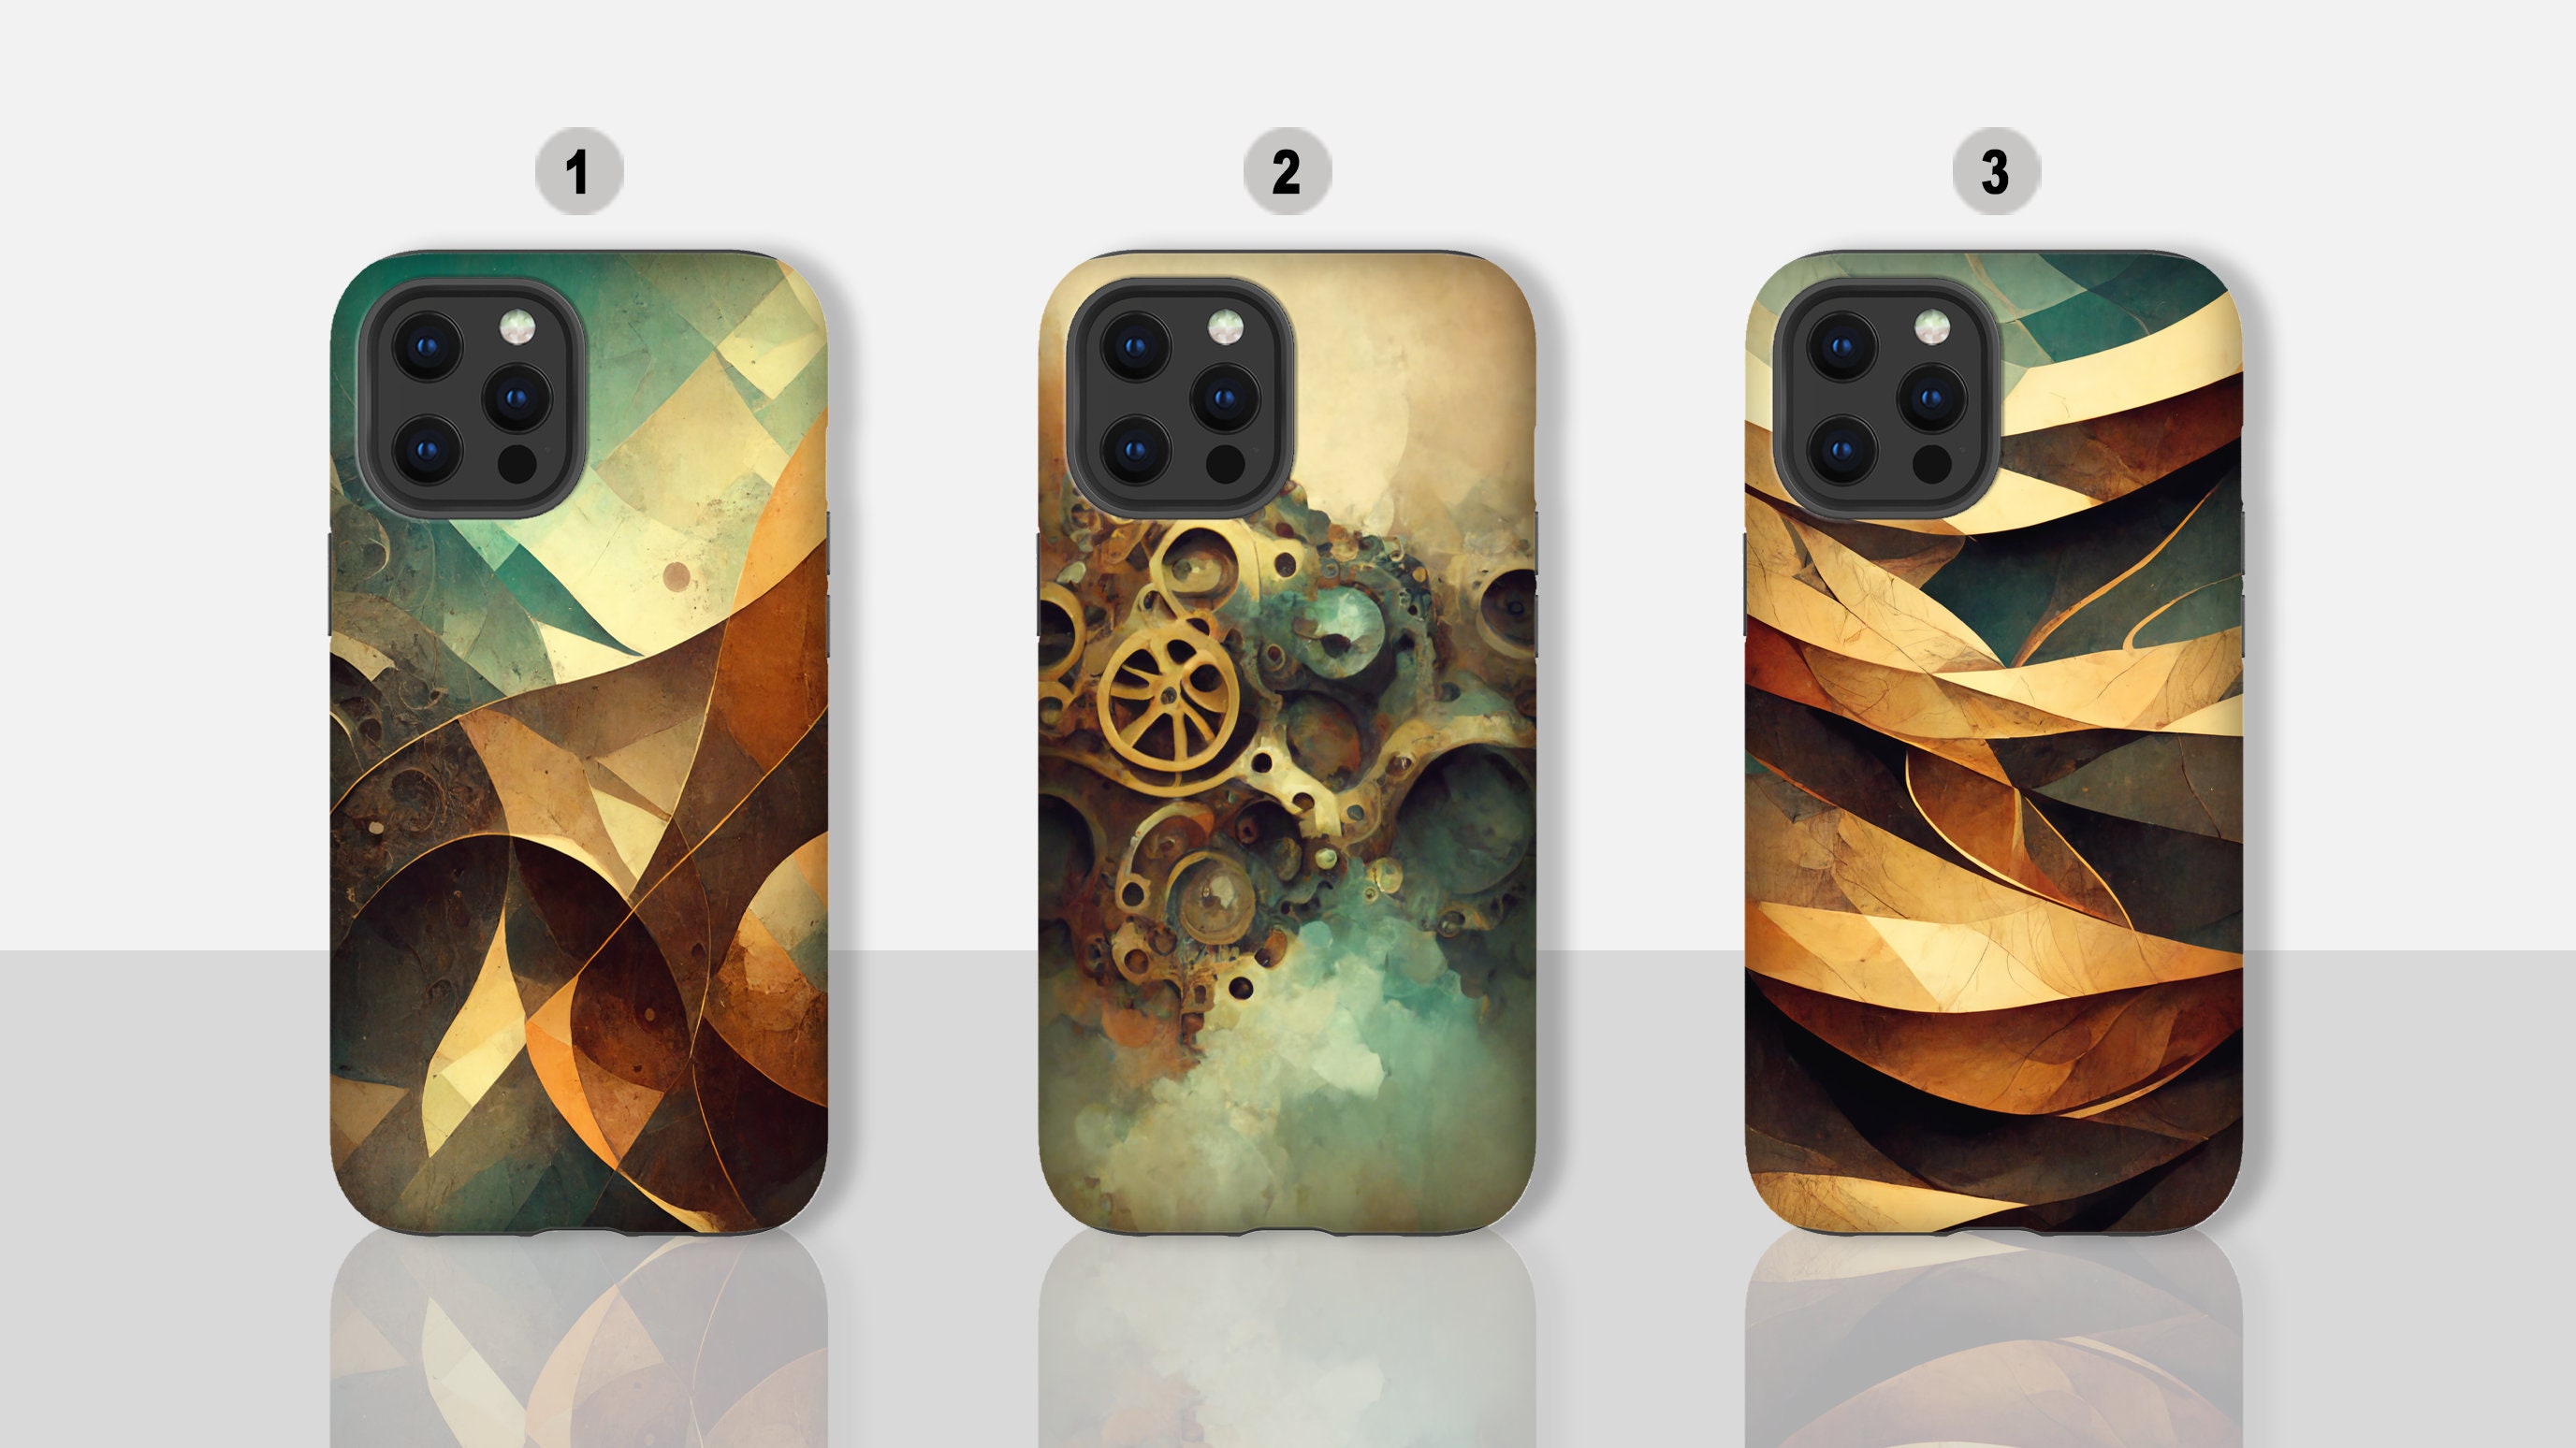 Steampunk Phone Case: Vỏ bao da Steampunk cho điện thoại của bạn sẽ mang đến một phong cách hoàn toàn mới lạ và cực kỳ ấn tượng. Những chiếc ốp lưng được thiết kế kỹ lưỡng với các chi tiết sắc nét, tạo nên một phong cách riêng biệt và cá tính cho chiếc điện thoại của bạn.